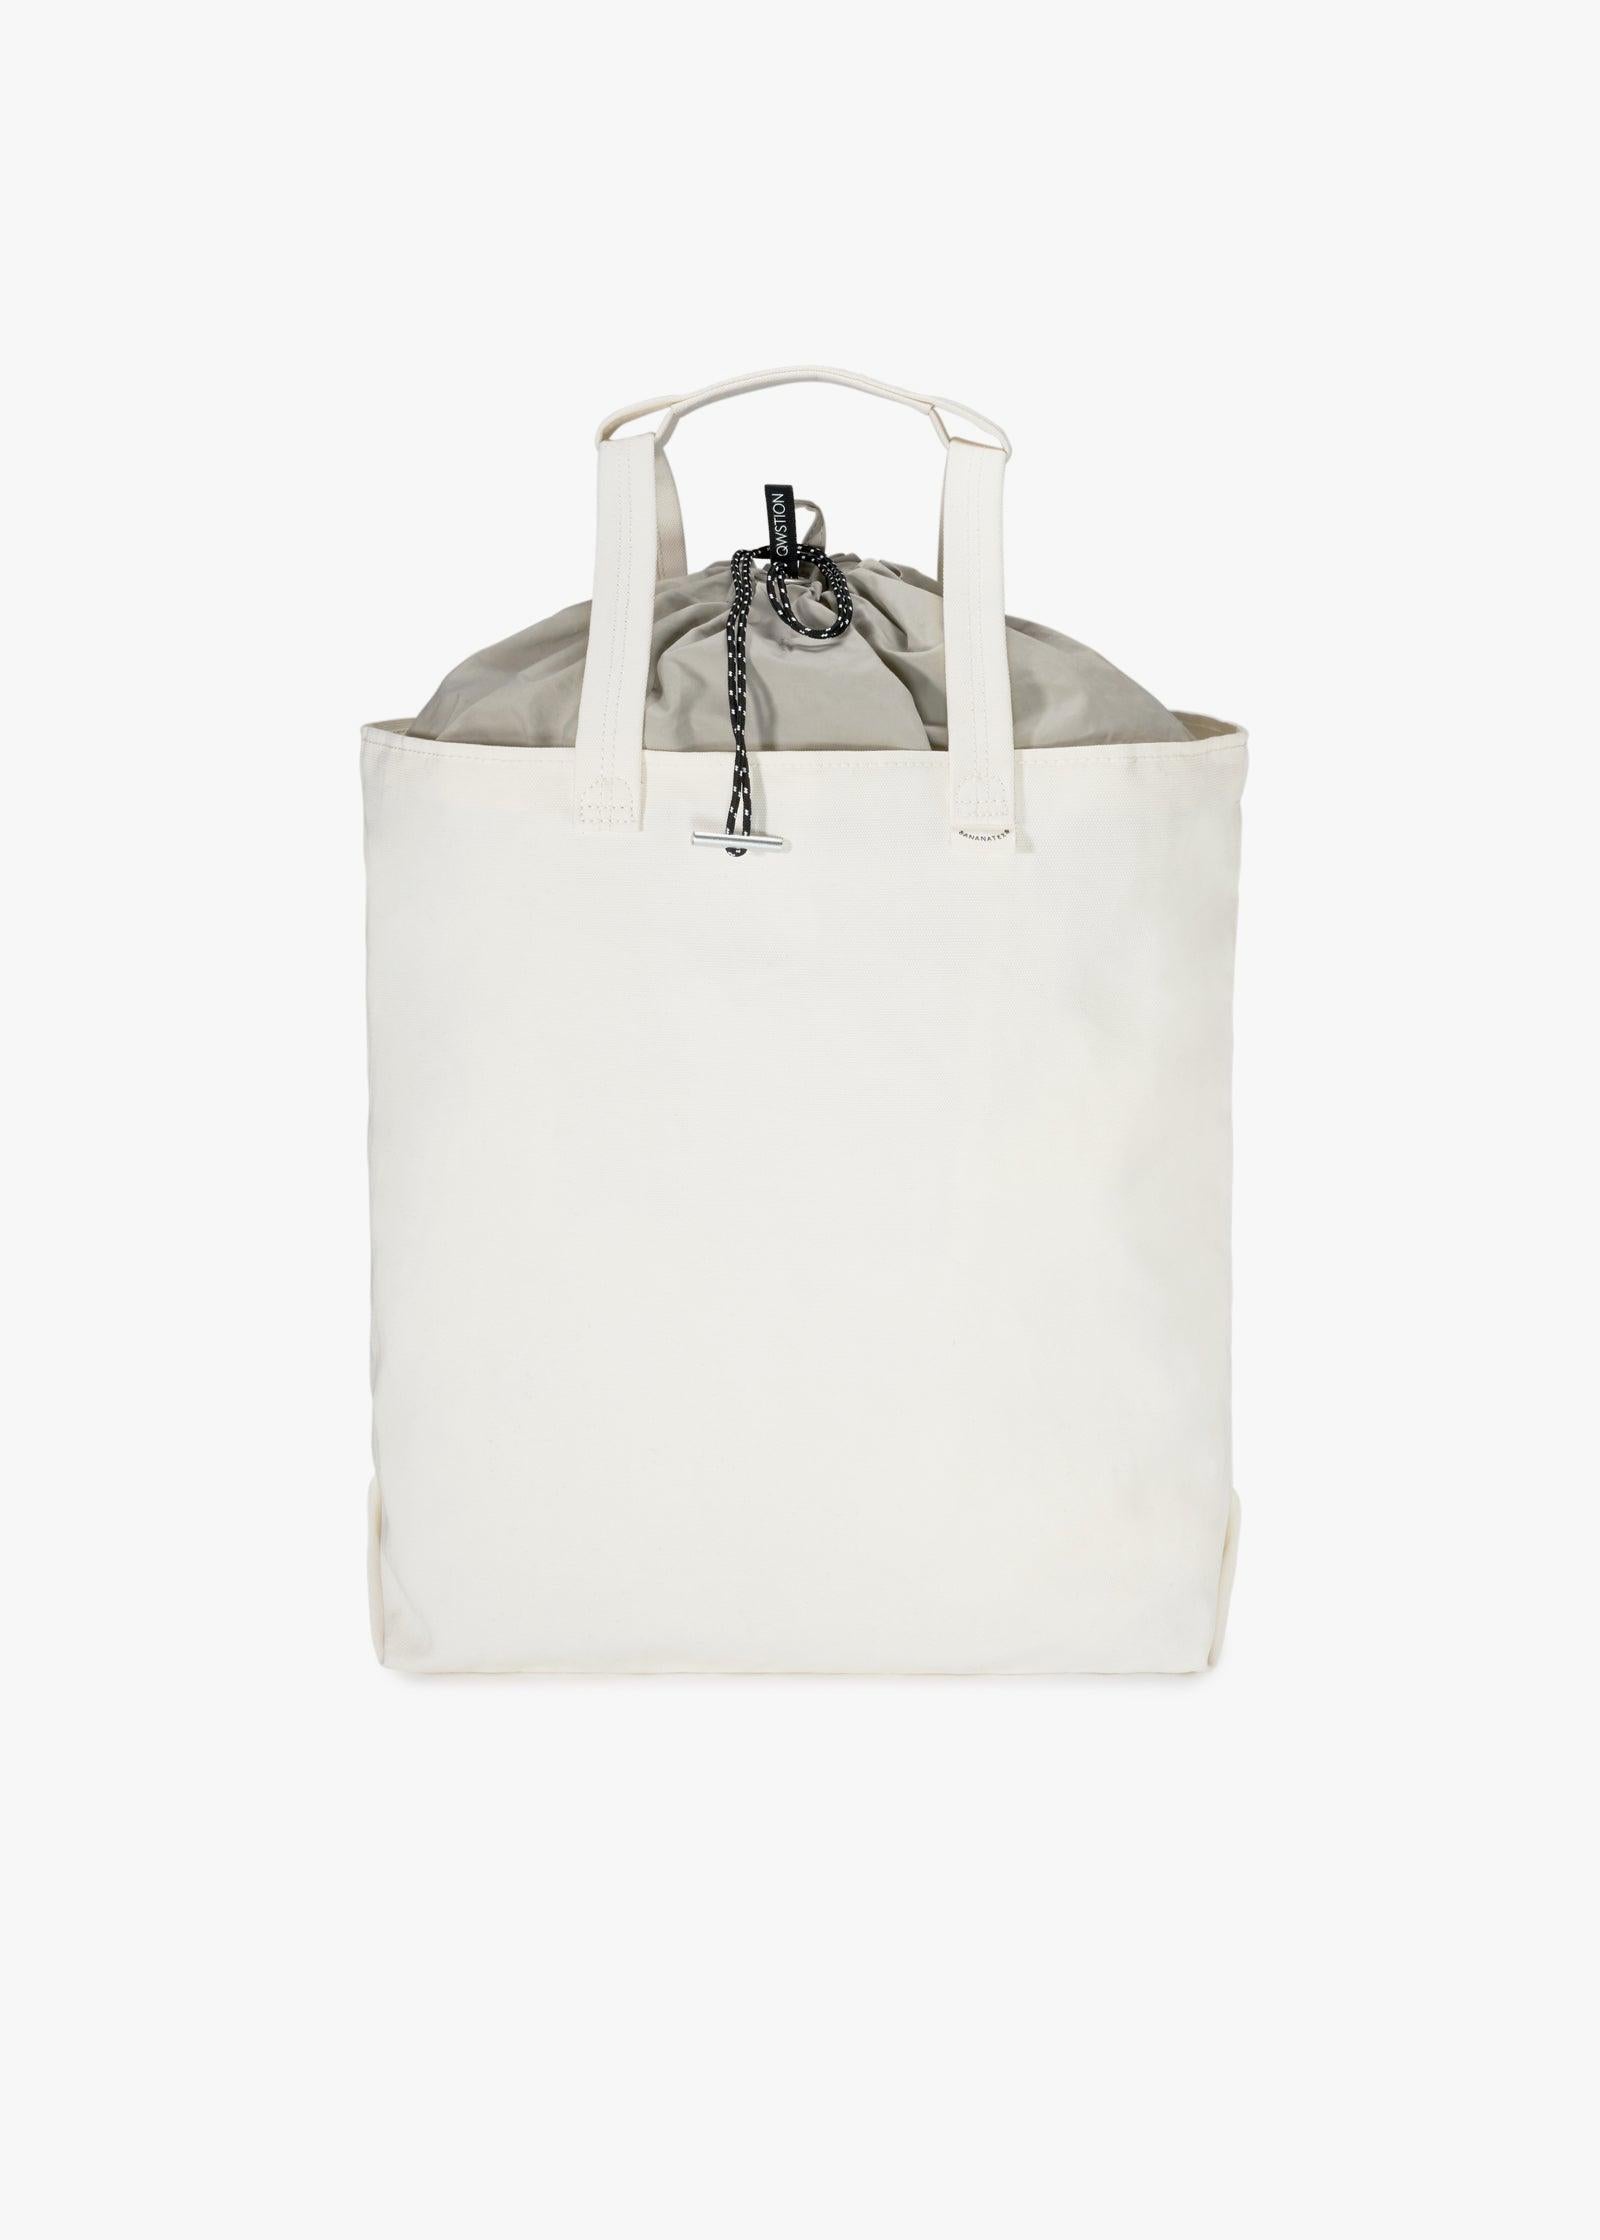 Bananatex Tote Bag Large – Natural White / Desert Hawk